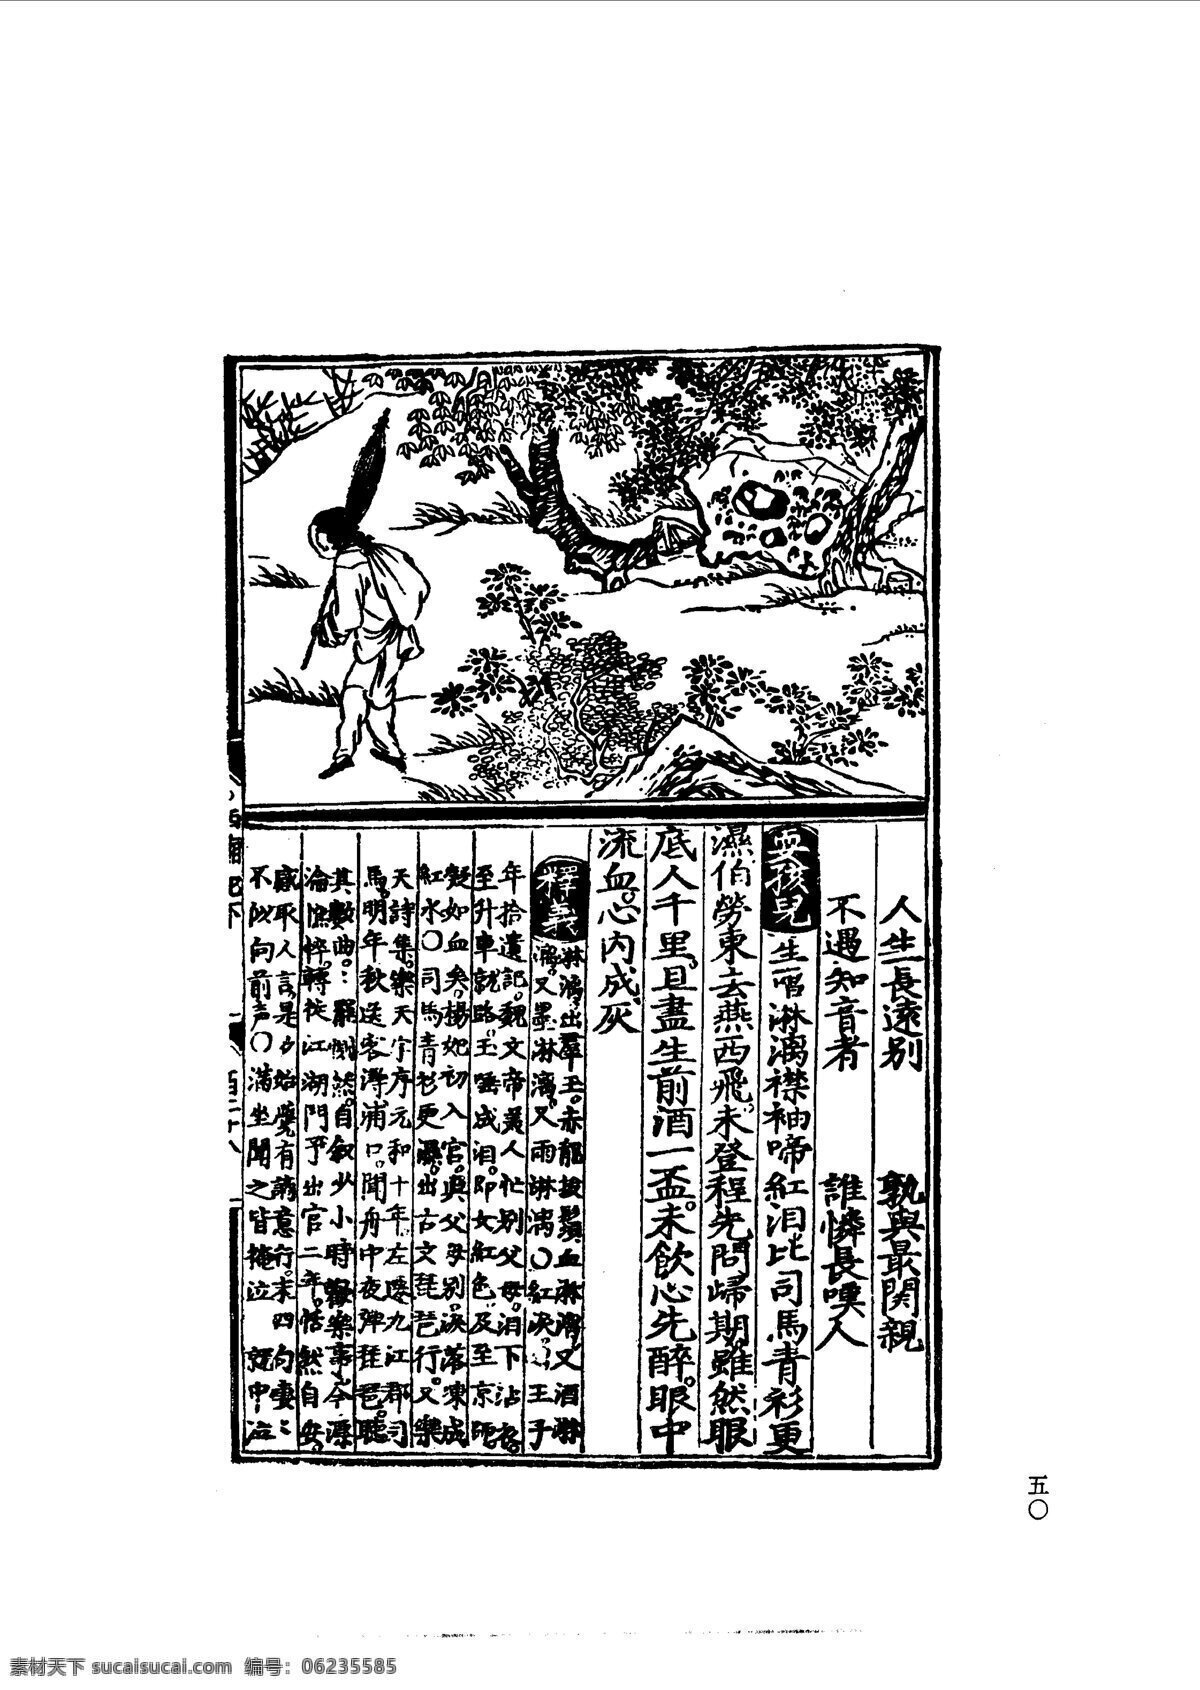 中国 古典文学 版画 选集 上 下册0079 设计素材 版画世界 书画美术 白色